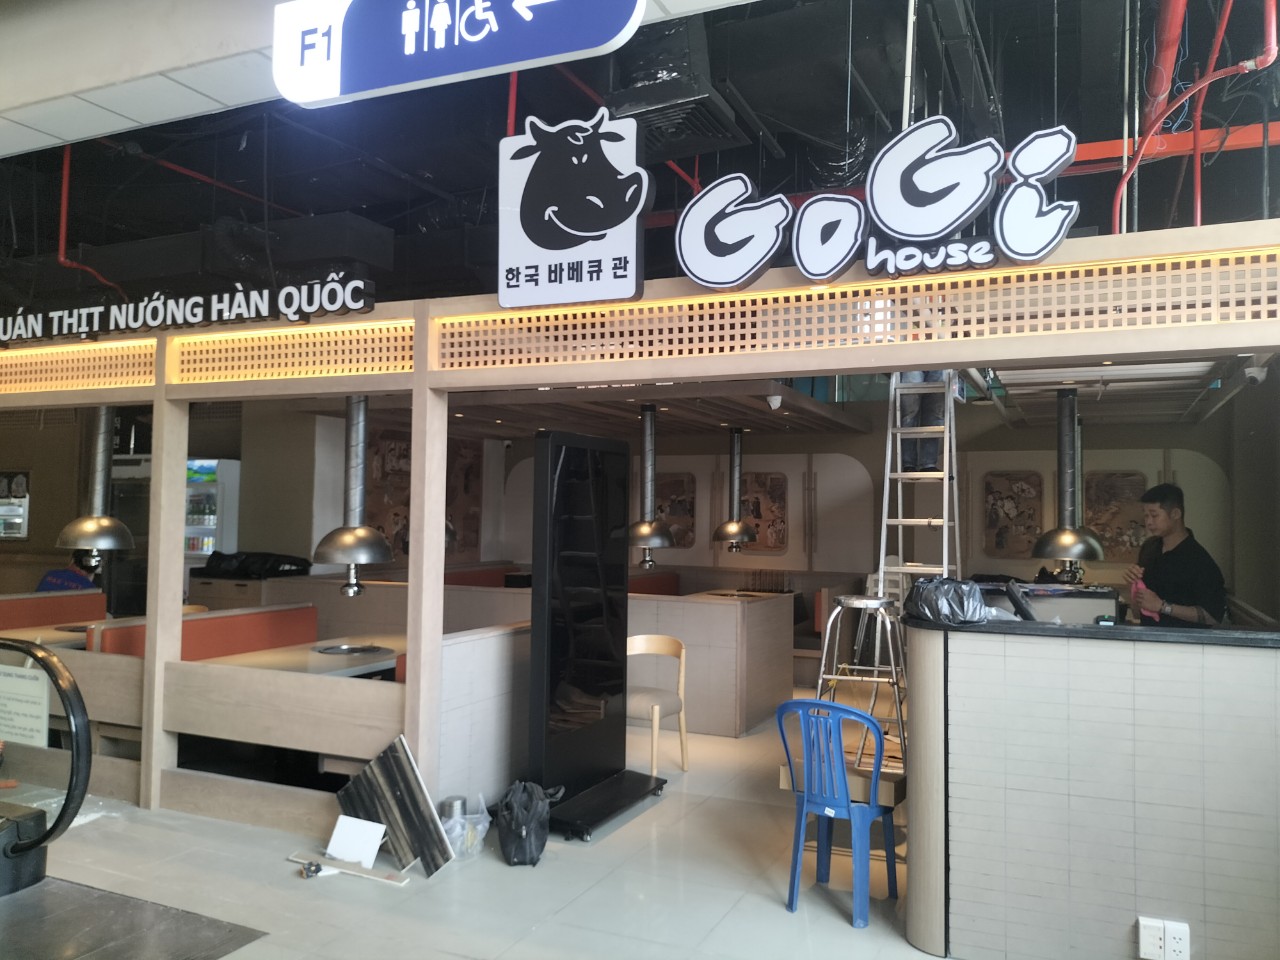 Nhà hàng gogi house Quang Trung